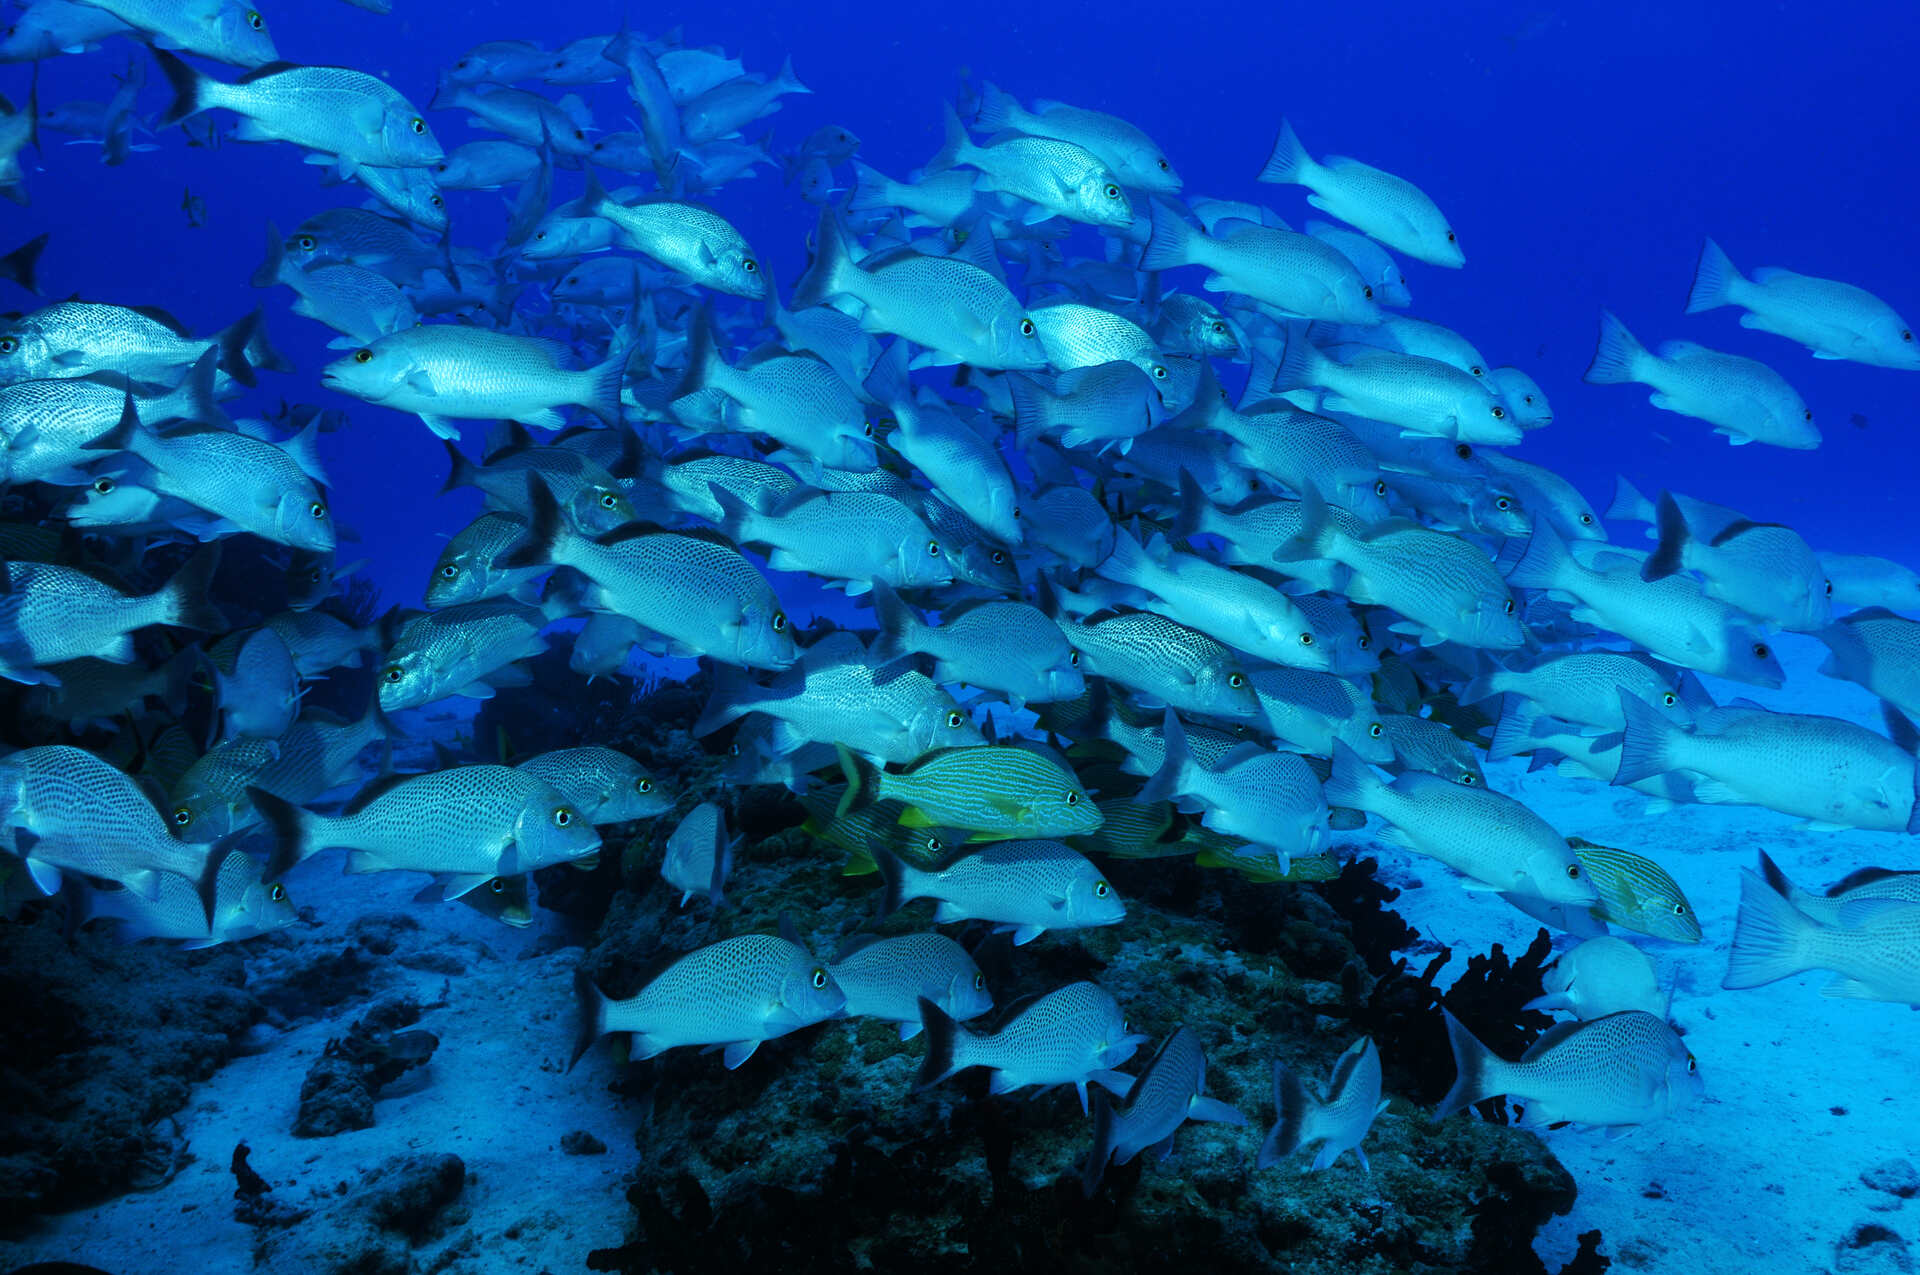 A school of bluefish